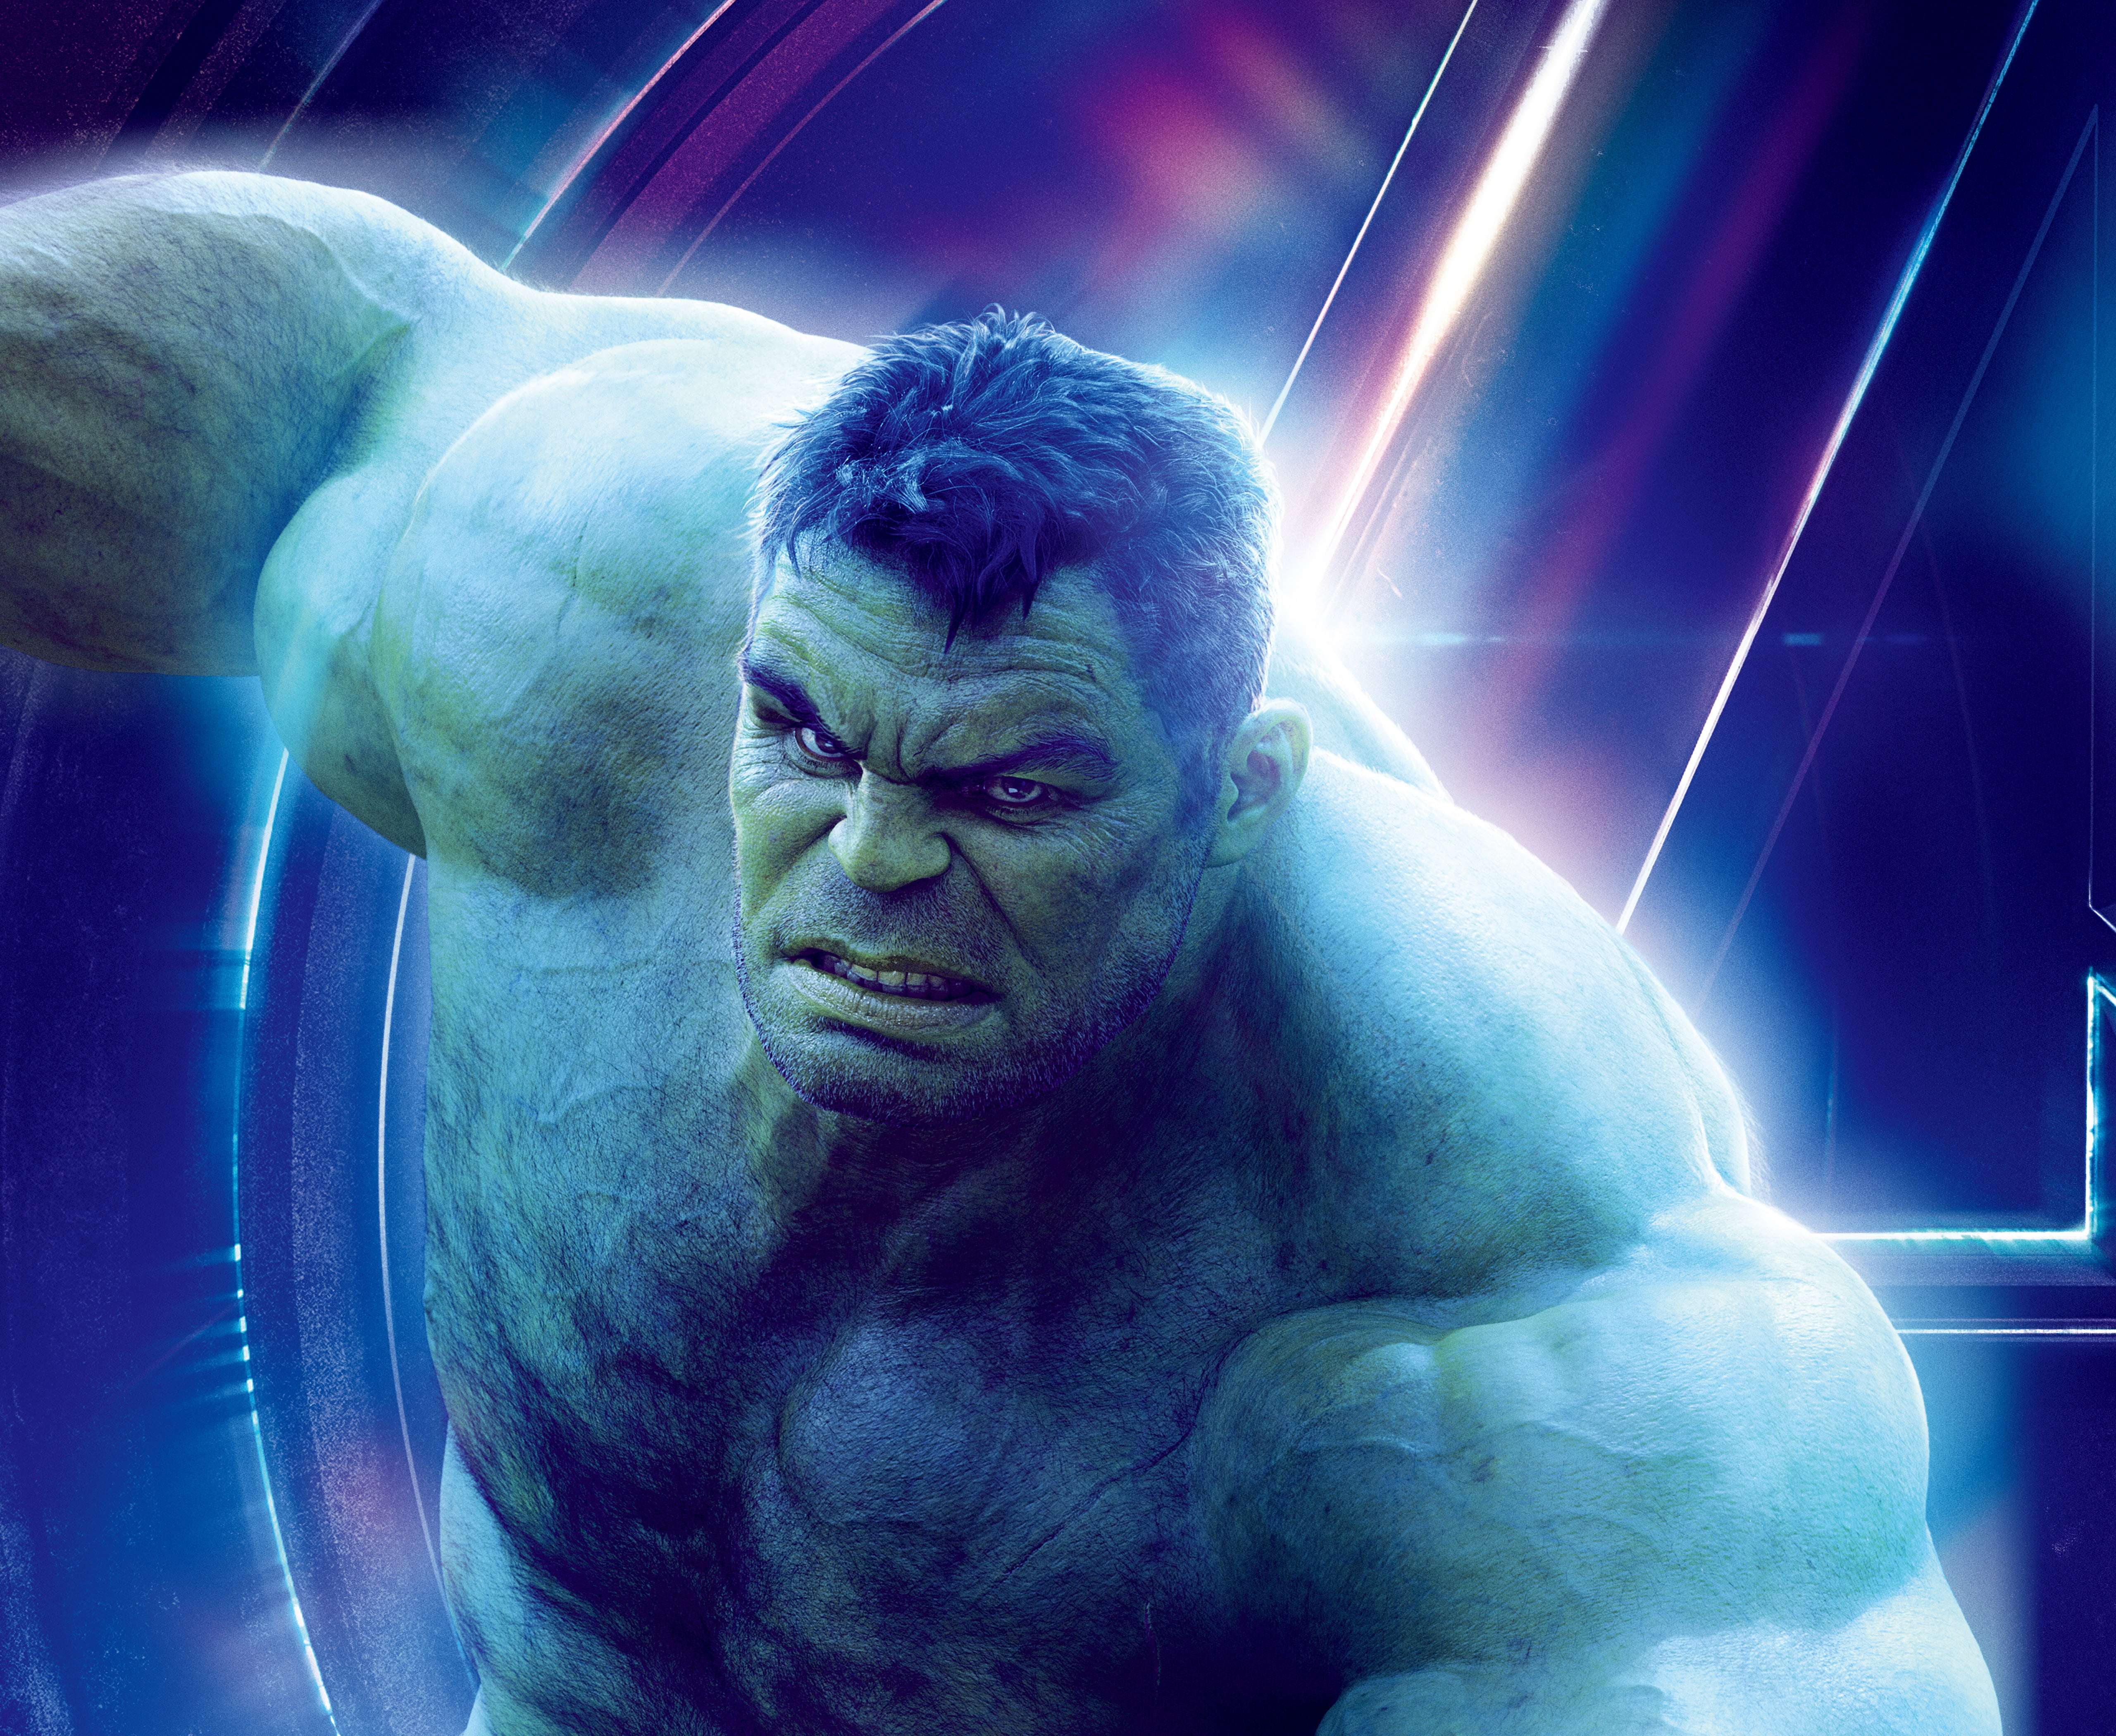 1920x1080 Resolution Angry Hulk Marvel's Avengers 4K 1080P Laptop Full HD  Wallpaper - Wallpapers Den